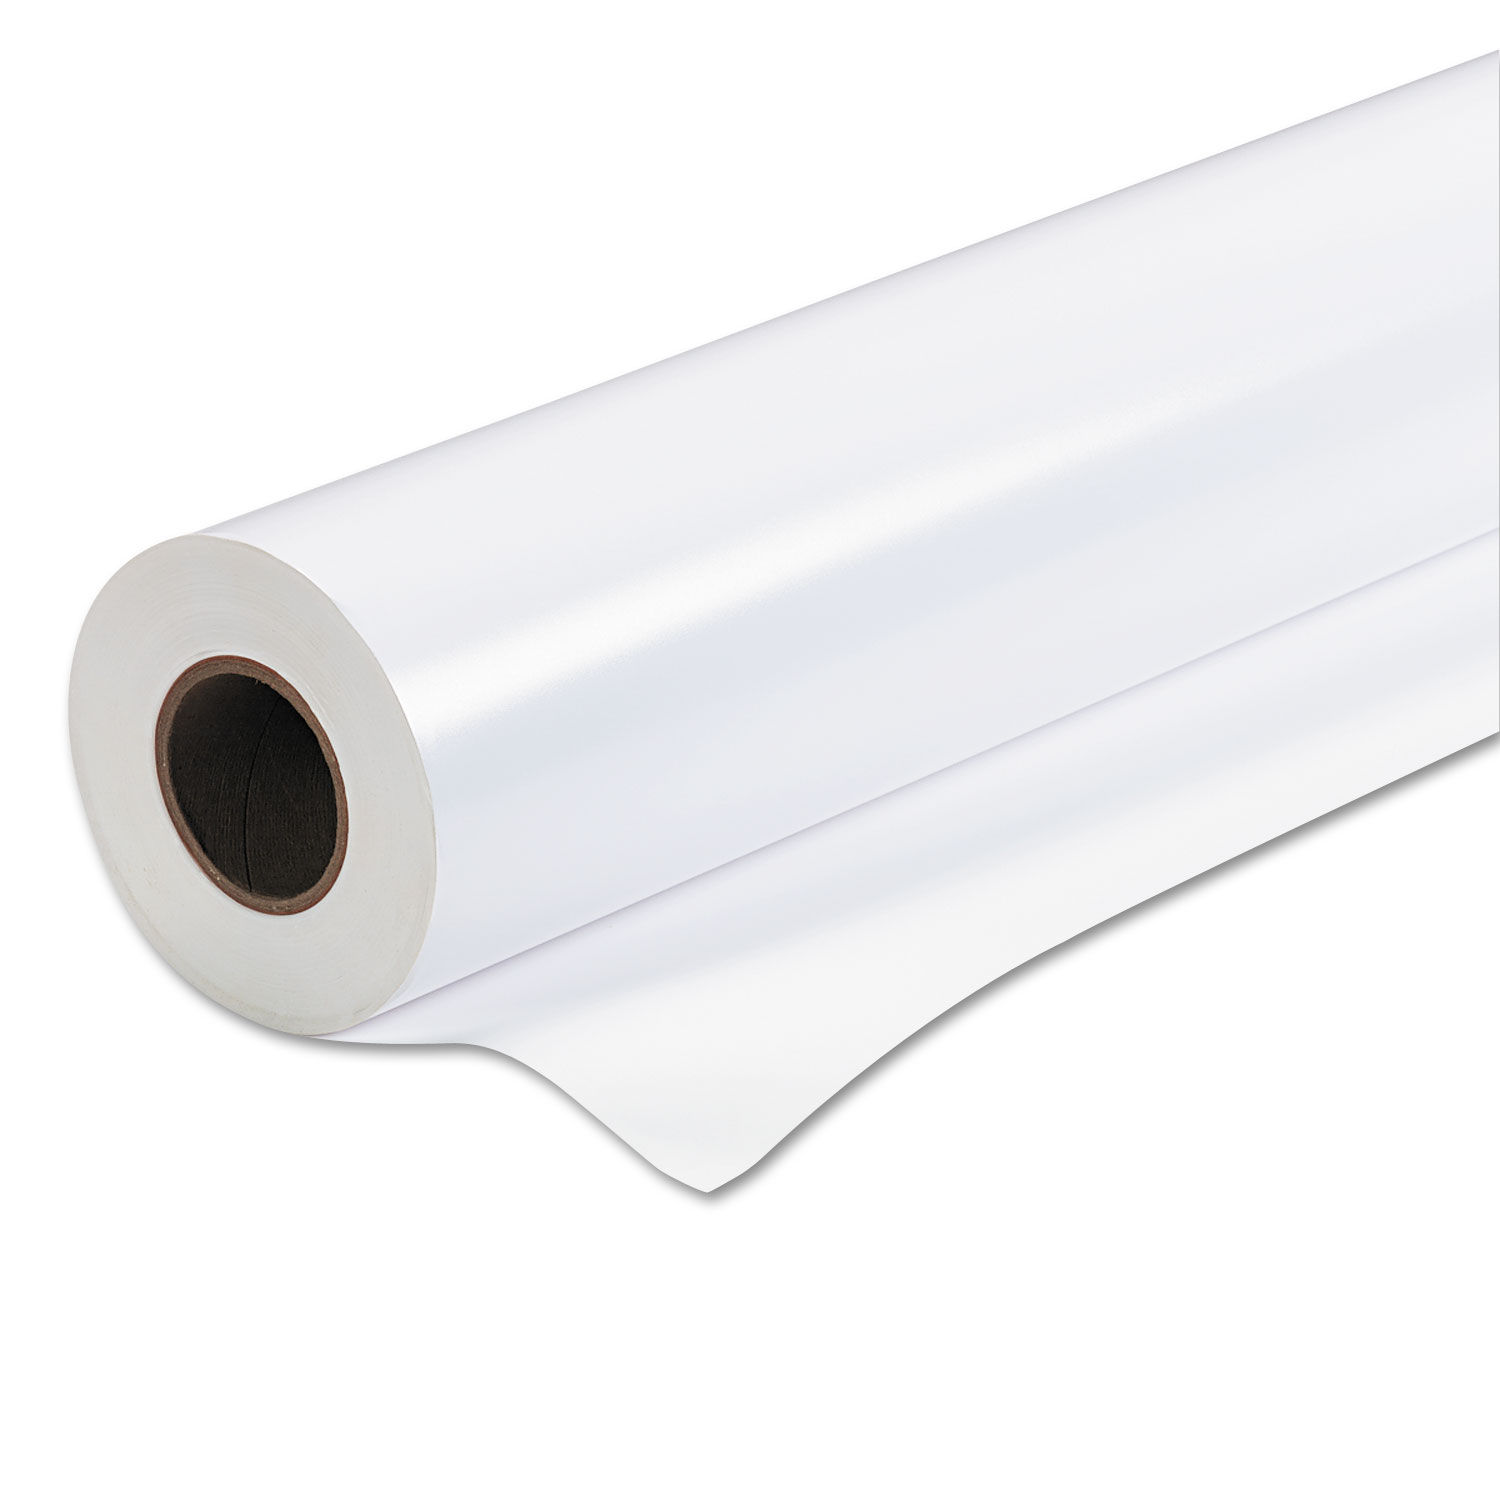 Premium Semigloss Photo Paper Roll 7 mil, 44" x 100 ft, Semi-Gloss White